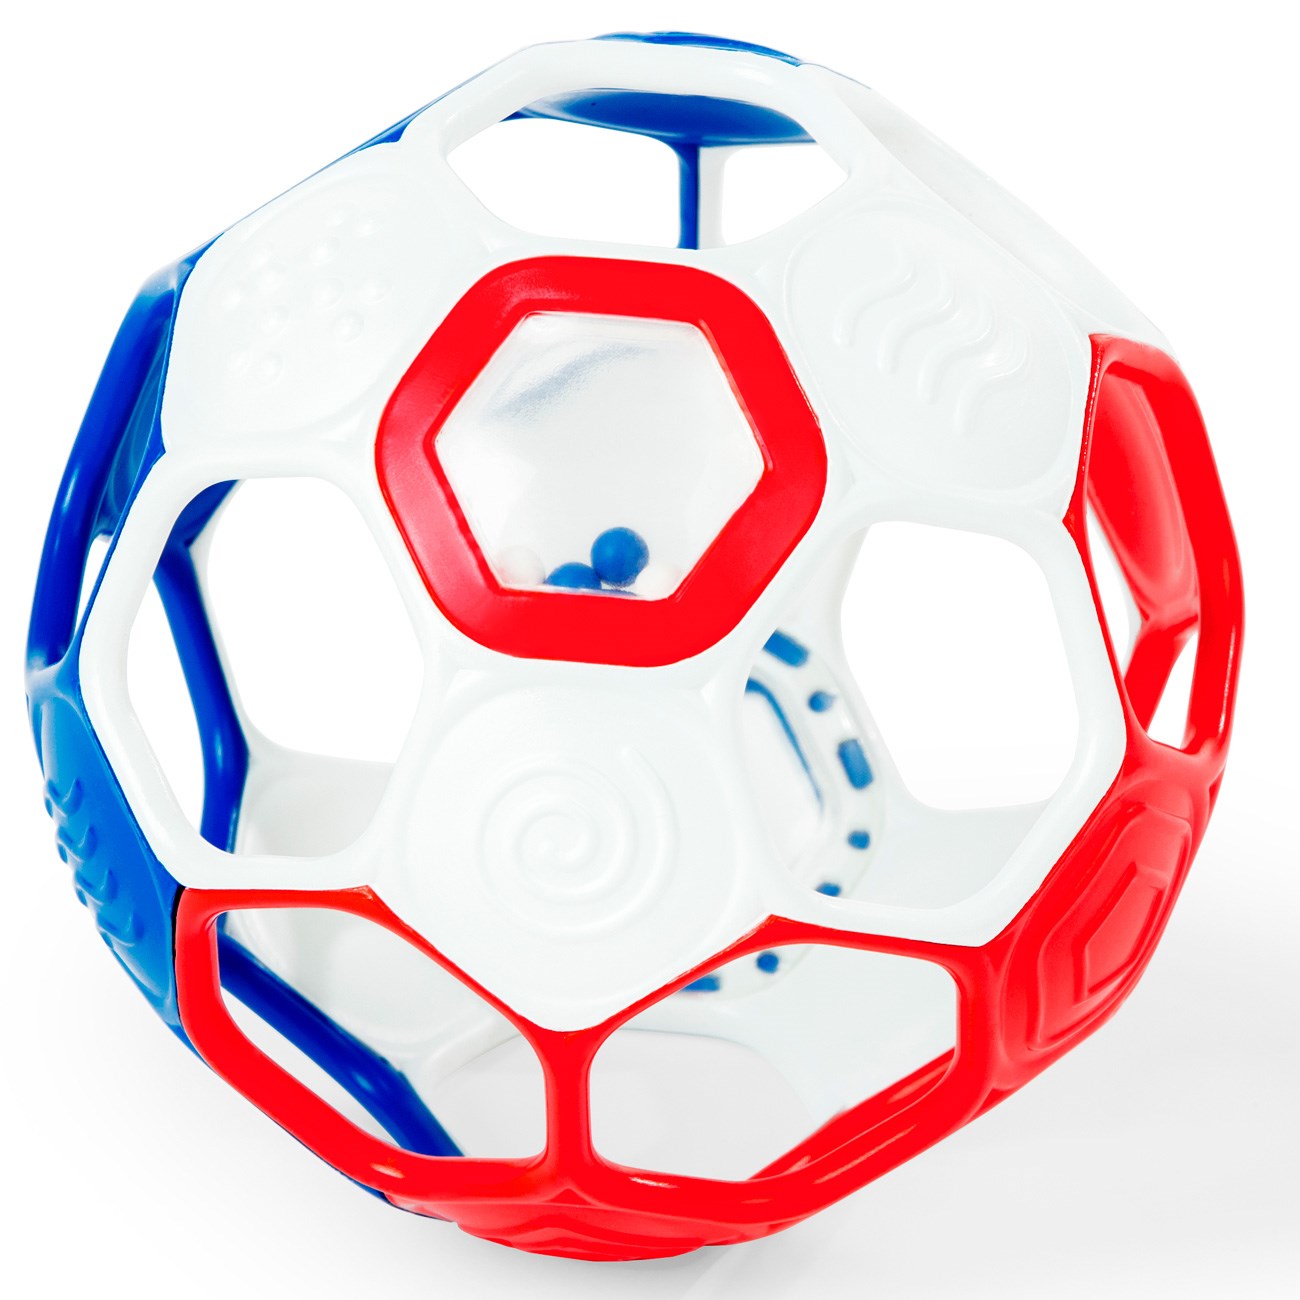 Oball Fotball (Rød / Hvit / Blå)